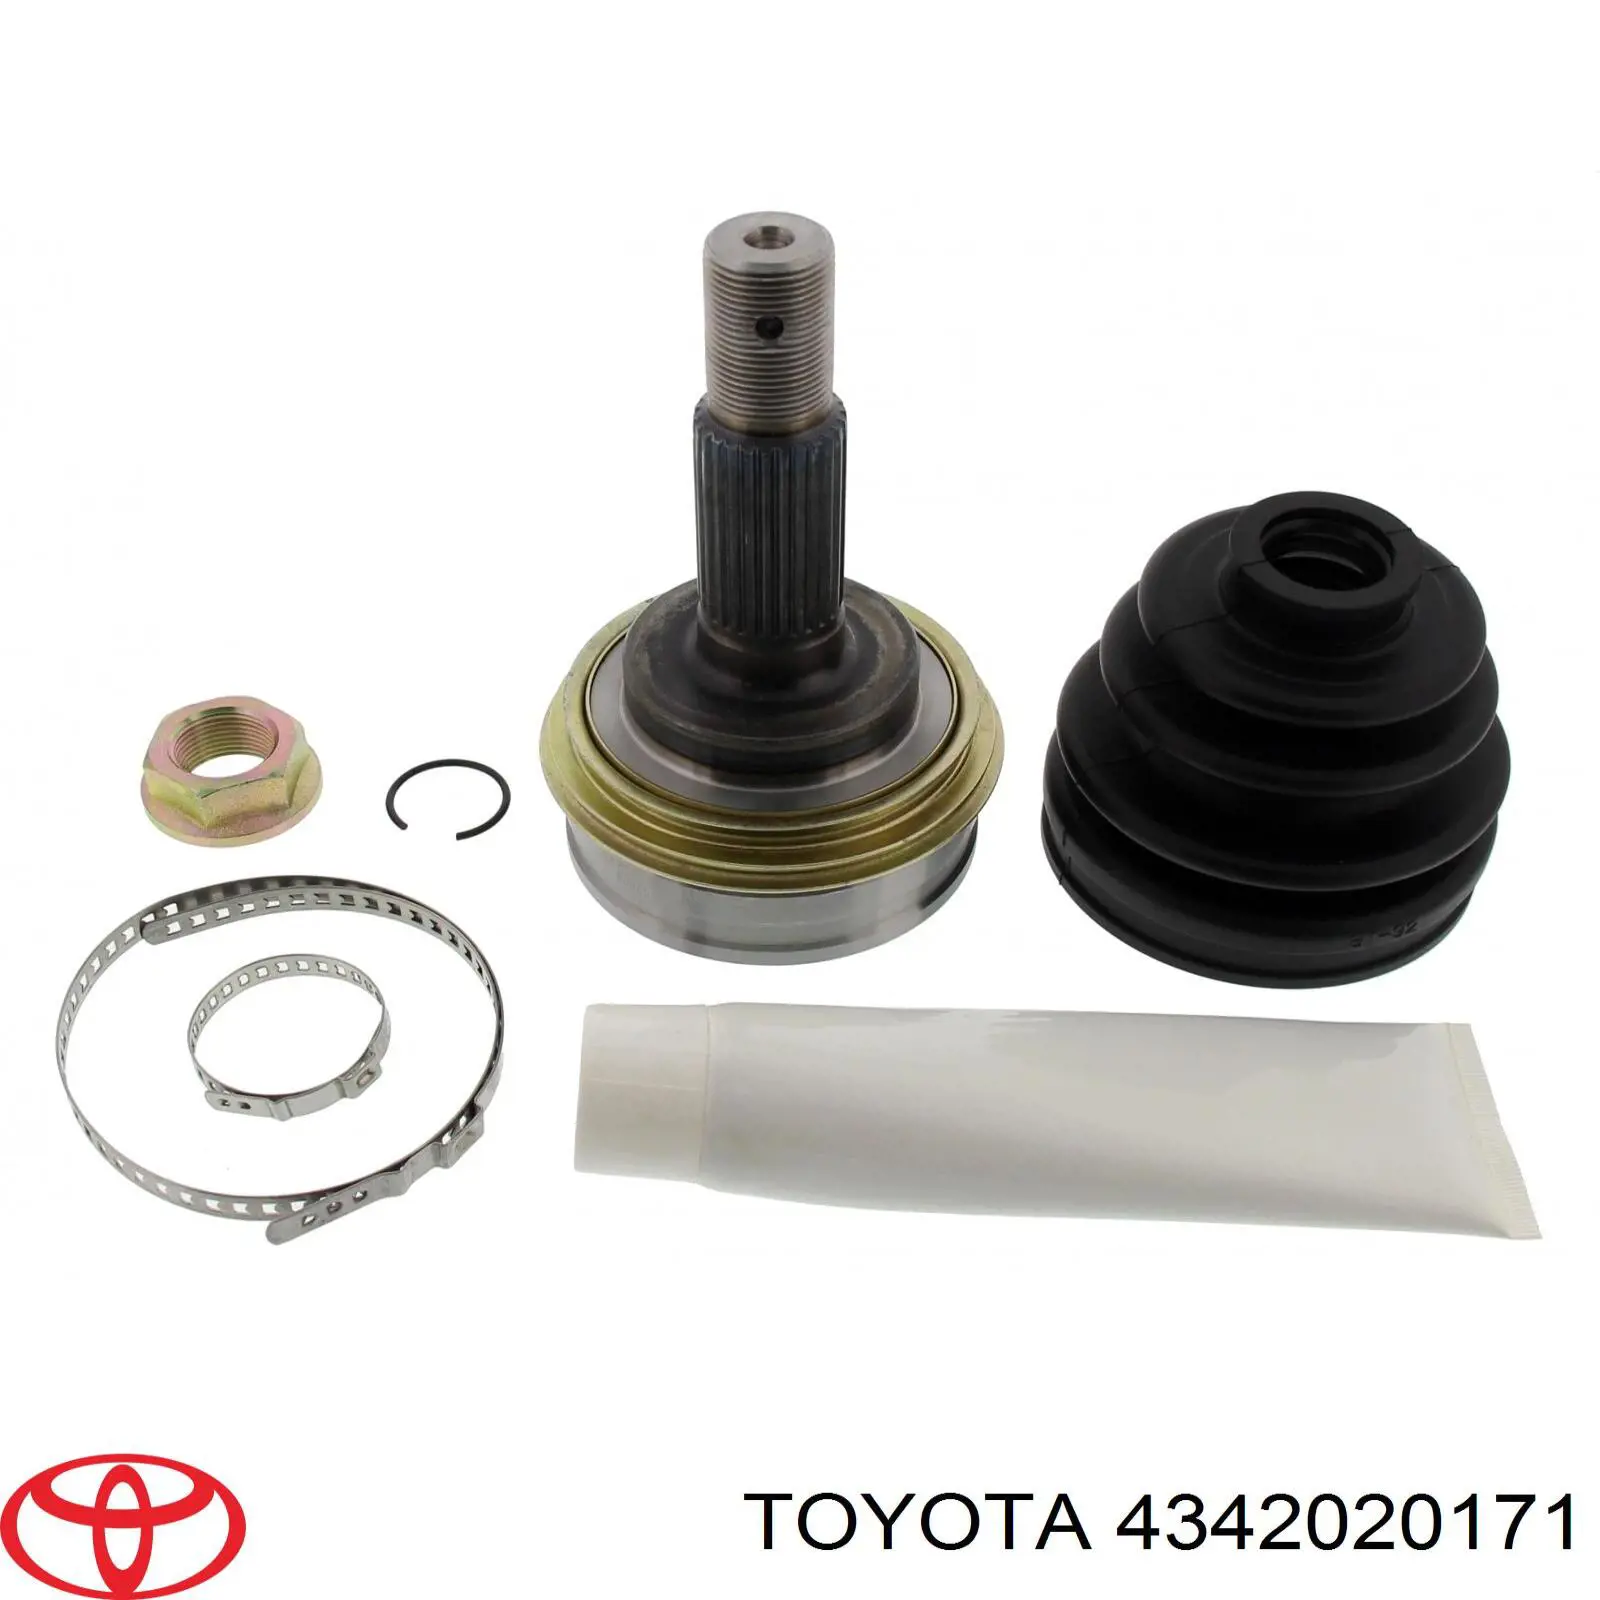 4342020171 Toyota junta homocinética exterior delantera